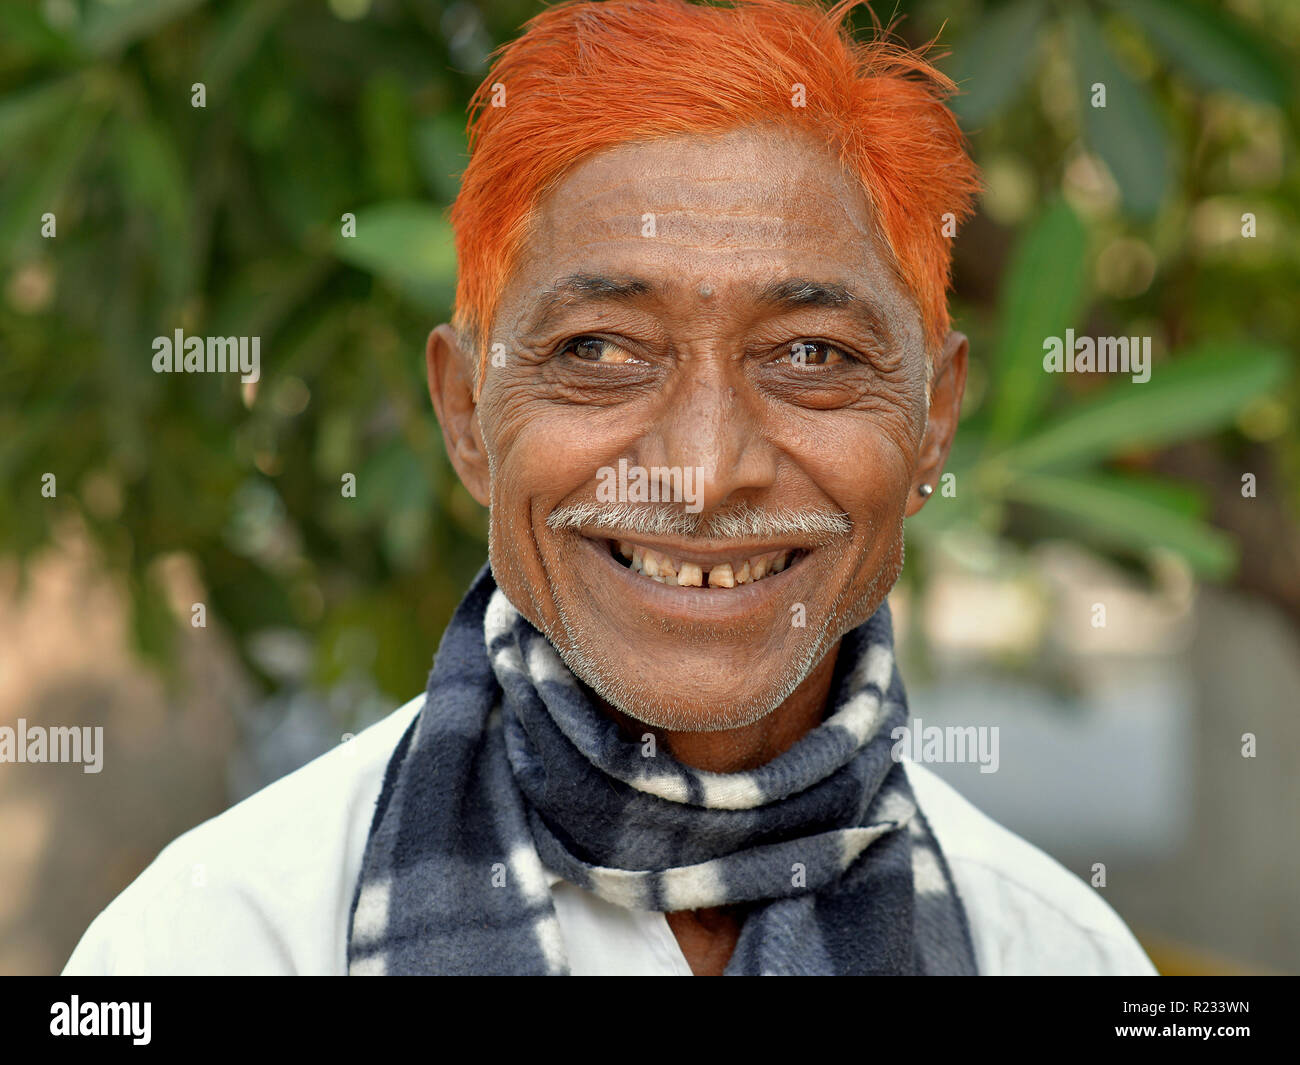 Strizzare gli occhi, di mezza età uomo indiano (occhio destro deviato verso l'esterno) con una matita di baffi e henné-tinto arancio sorrisi dei capelli per la fotocamera. Foto Stock